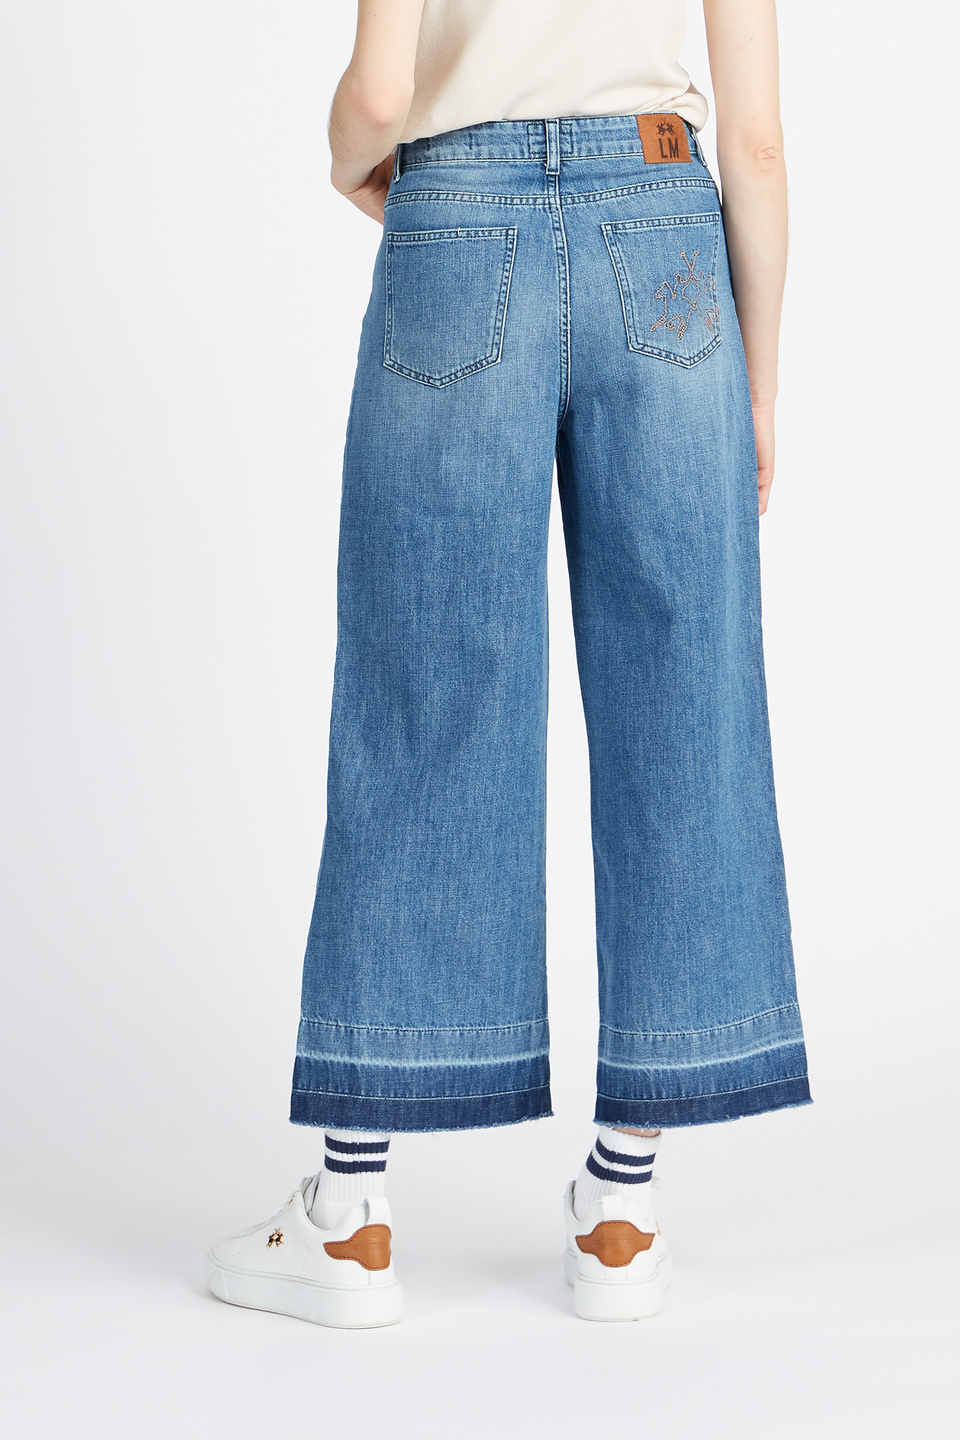 Women's denim jeans trousers 5 pockets capsule Spring Weekend - Villem | La Martina - Official Online Shop